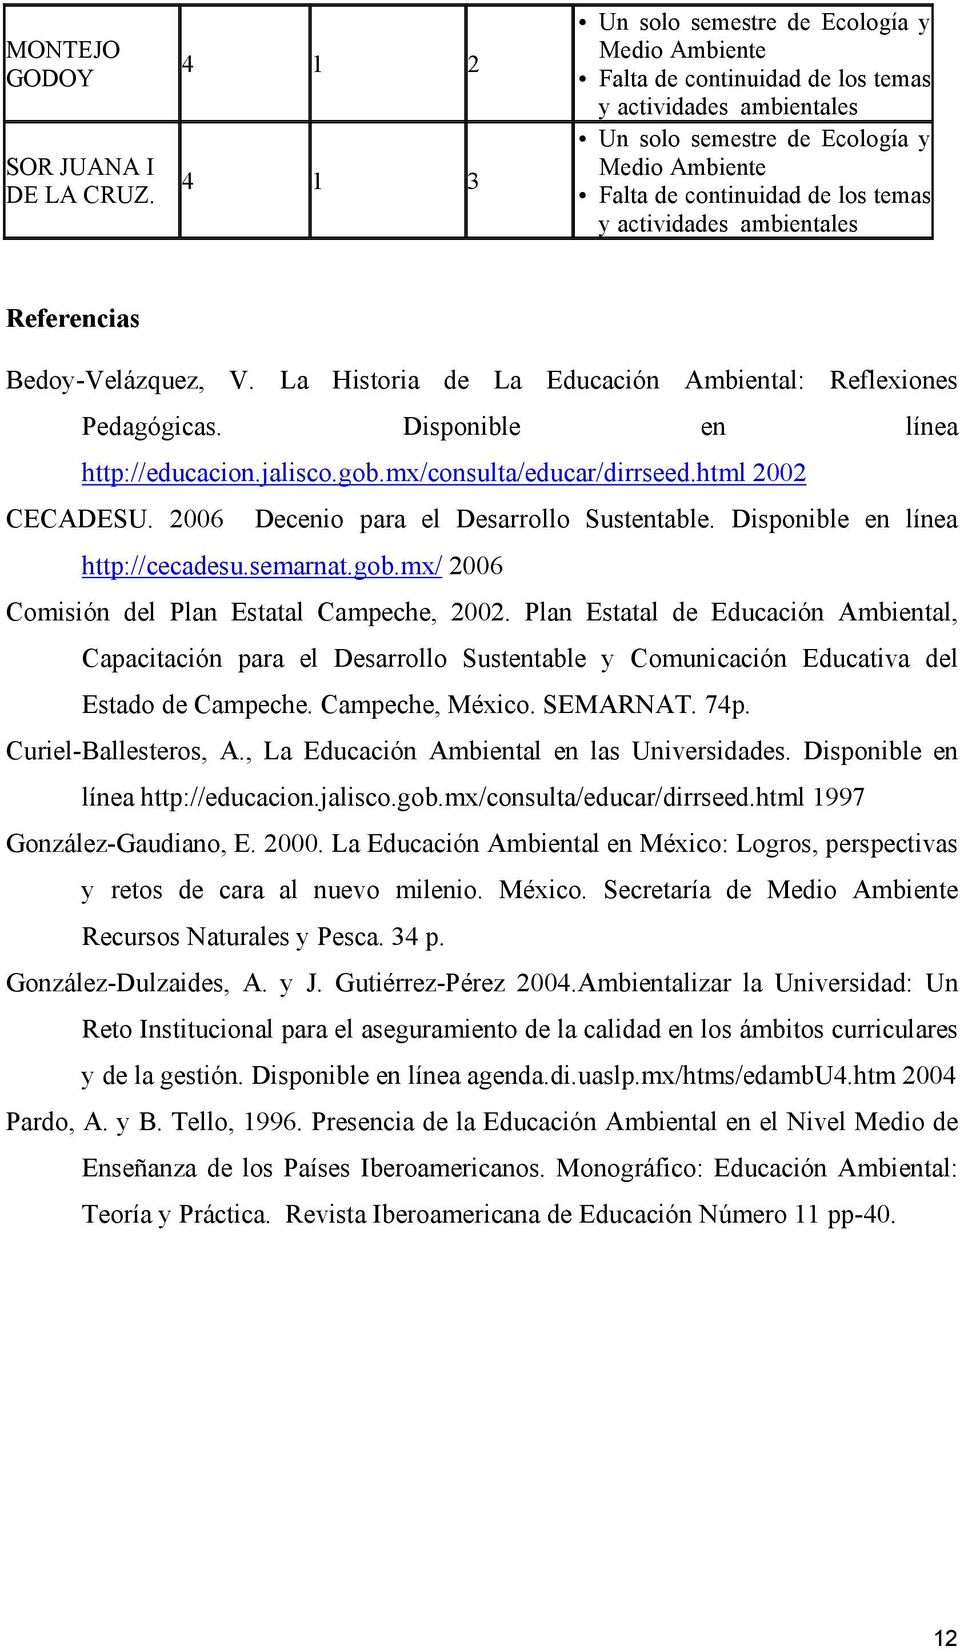 actividades ambientales Referencias Bedoy-Velázquez, V. La Historia de La Educación Ambiental: Reflexiones Pedagógicas. Disponible en línea http://educacion.jalisco.gob.mx/consulta/educar/dirrseed.